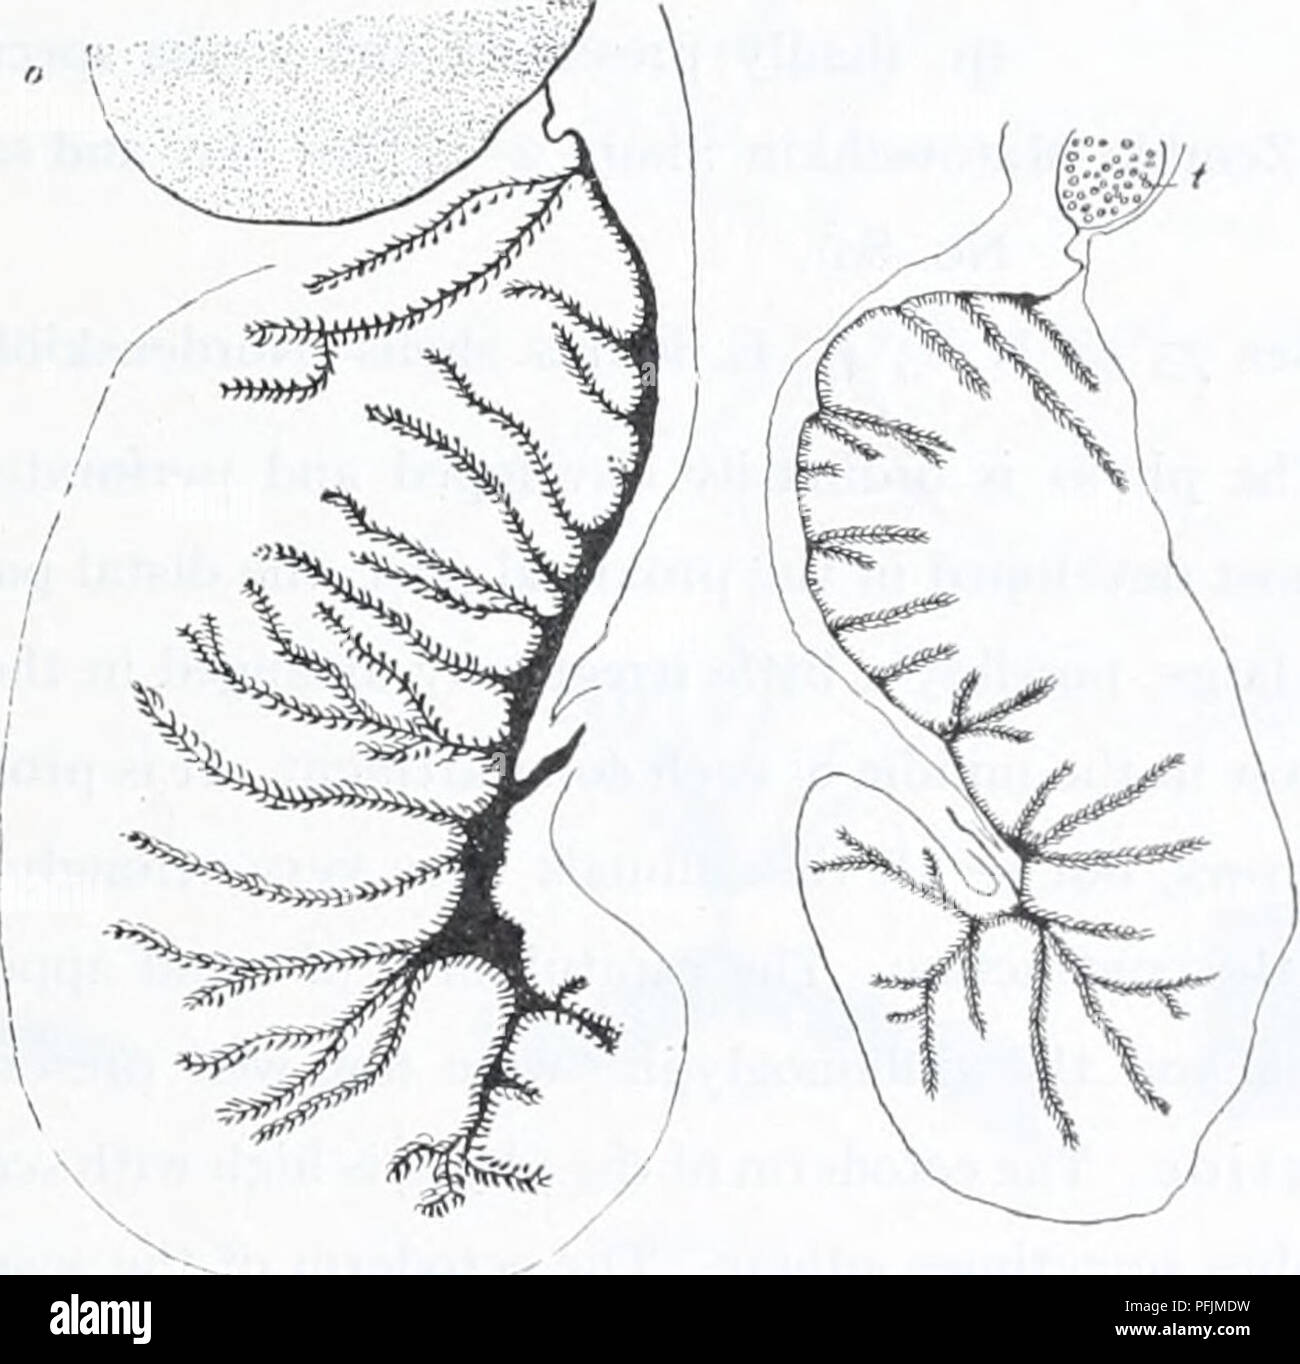 . Ingolf danés-expedición. Los animales marinos -- las regiones árticas; expediciones científicas; las regiones árticas. 39 tocysts ACTINIARIA. Los nematocistos de los actinopharynx también son de dos tamaños. El tamaño de la spirocysts (sp). AUD nematocistos (n) en las diversas regiones del cuerpo es como sigue. Hábitat nemathybomes capituluin tentáculos actinopharynx. n n n n. sp., n. I) I.OCO Correa (Mort. 1900 29-39 X 3-5-4", 55 a 72 x 5 u - 17-19 X 1-2 U 10-14 X 1-2 jU - 24 x 2-2,5 u 2) - ( - 1912 24 - 33 X (2,5) 3* - 7-12 X 1.5/1 17-19 X 2 10-17 X 1-2 - 3) - (Schiodte) 26-43 X 3-3,5 (2,5 - 4) El Soun Foto de stock